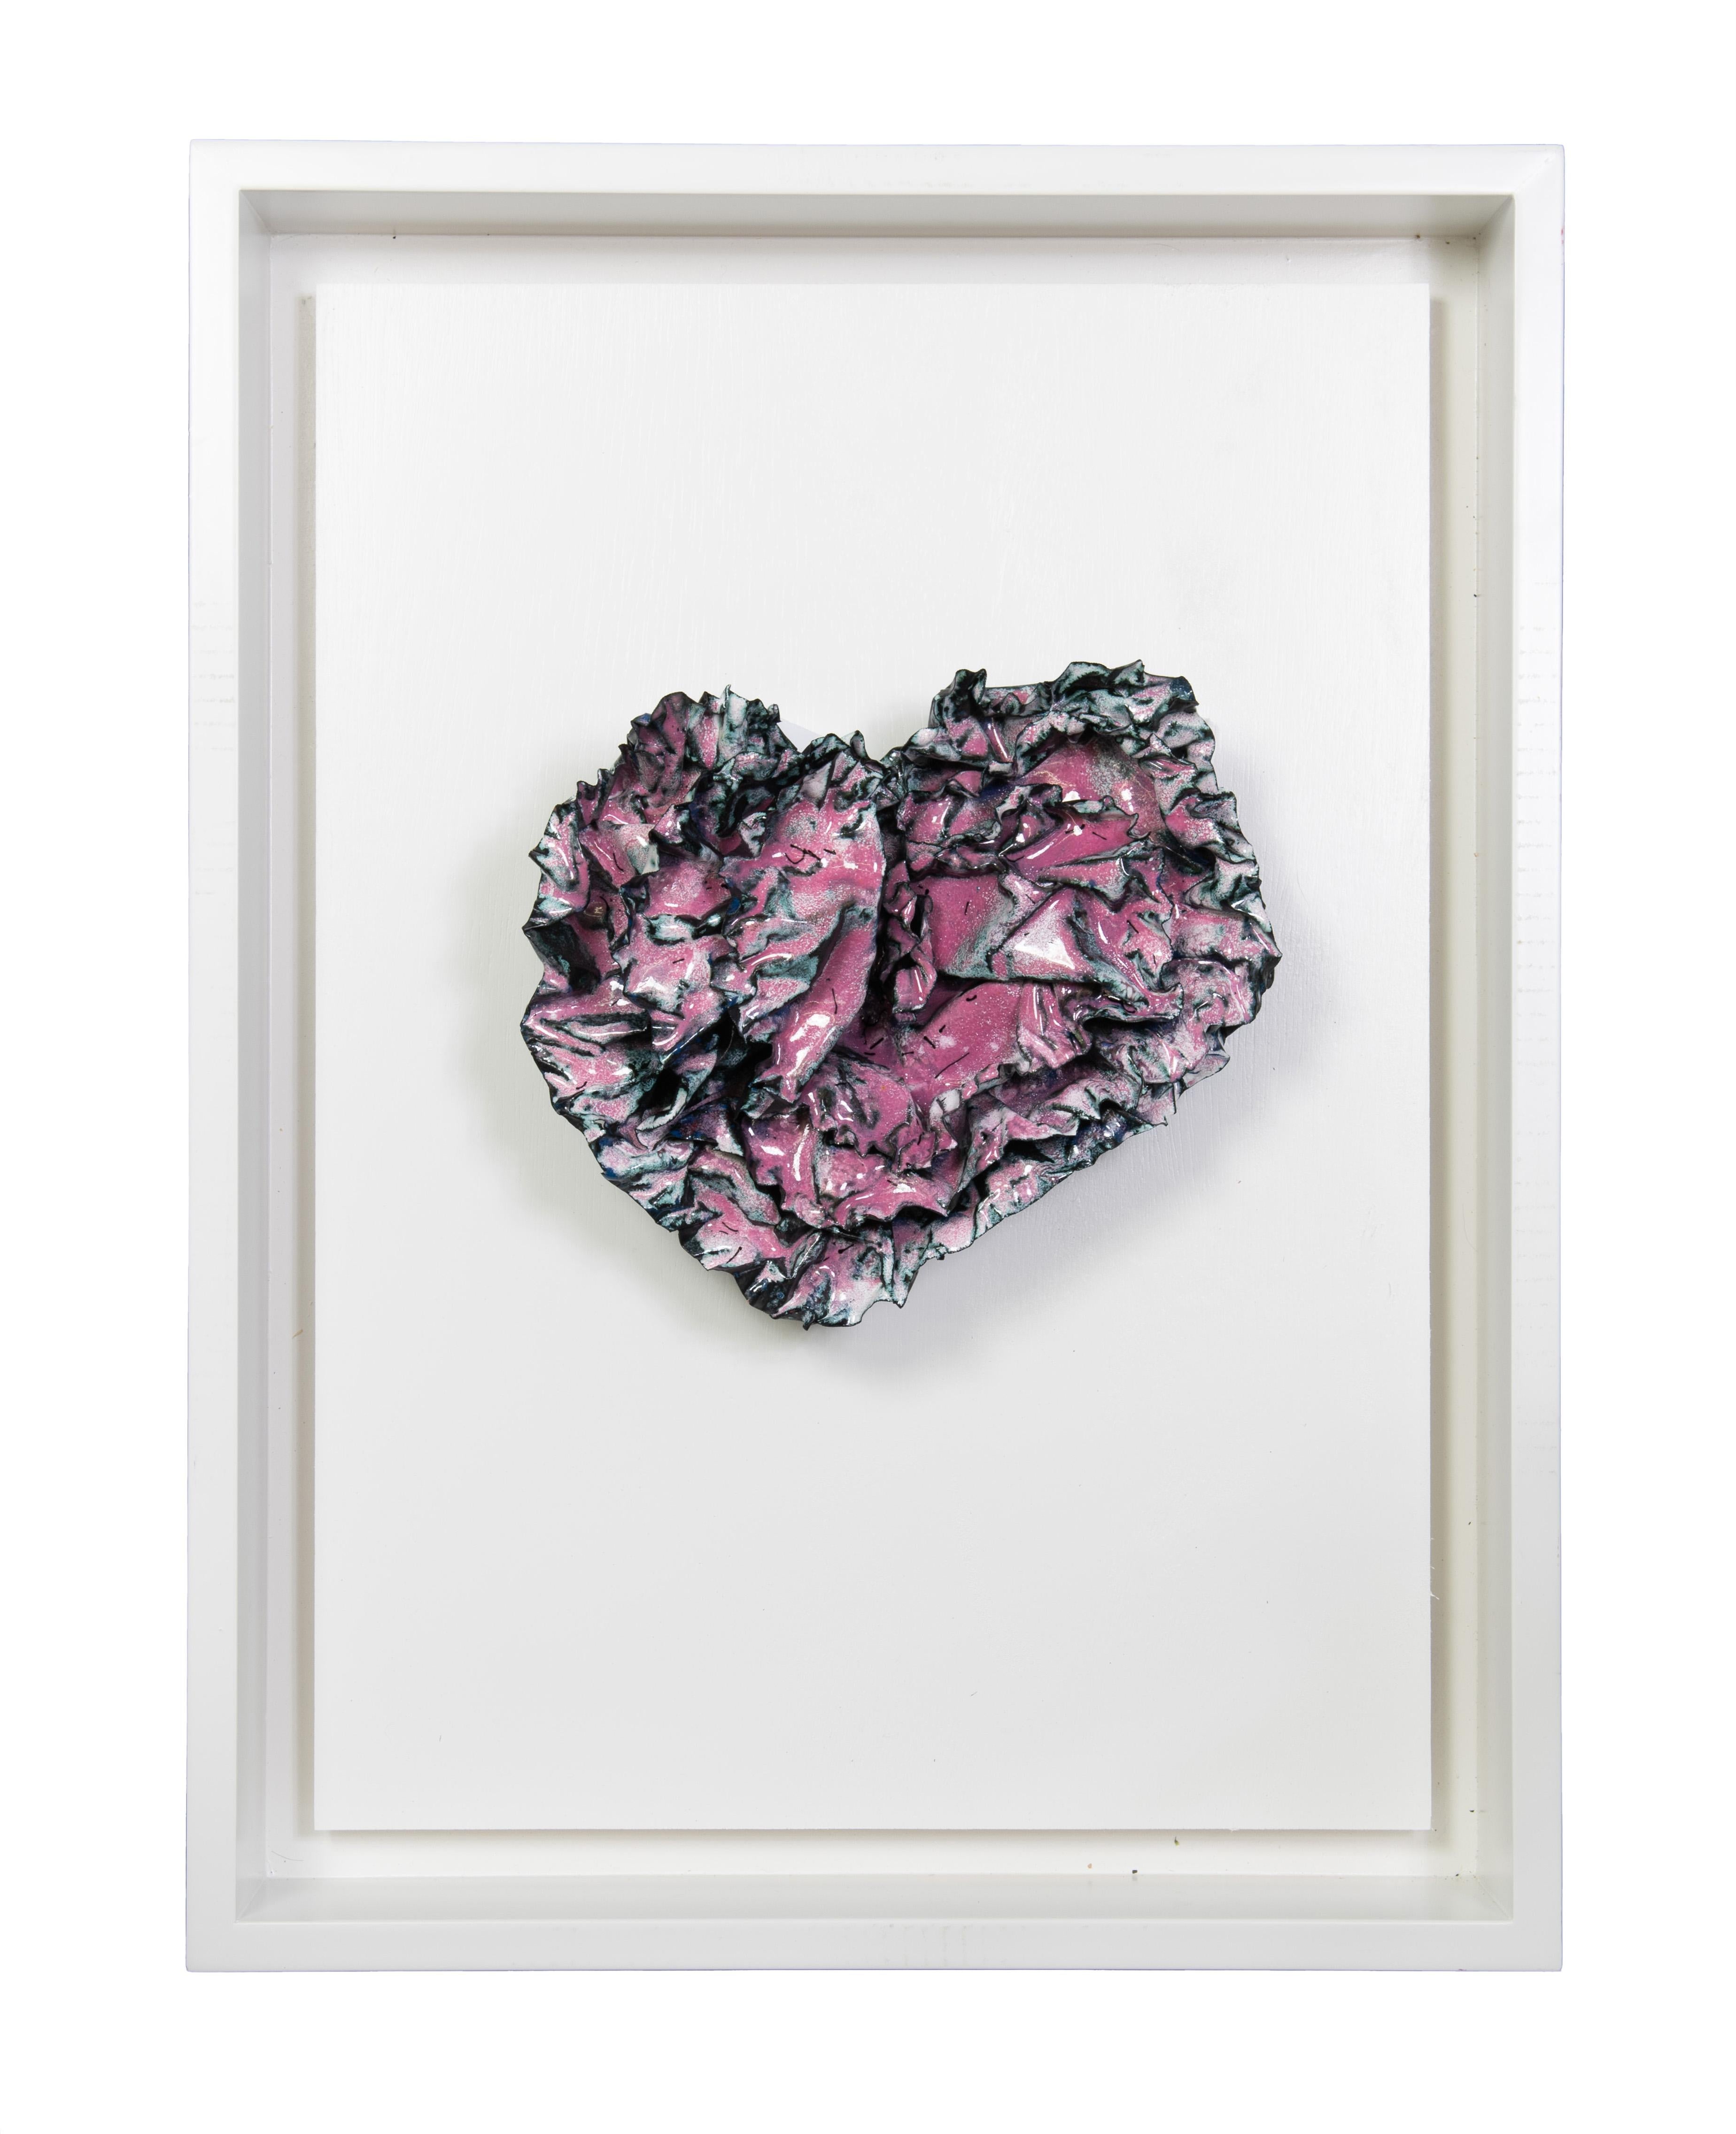 Sherry Been Abstract Sculpture - "Rasberry Pink Heart" Abstract Wall Art Sculpture, 2023